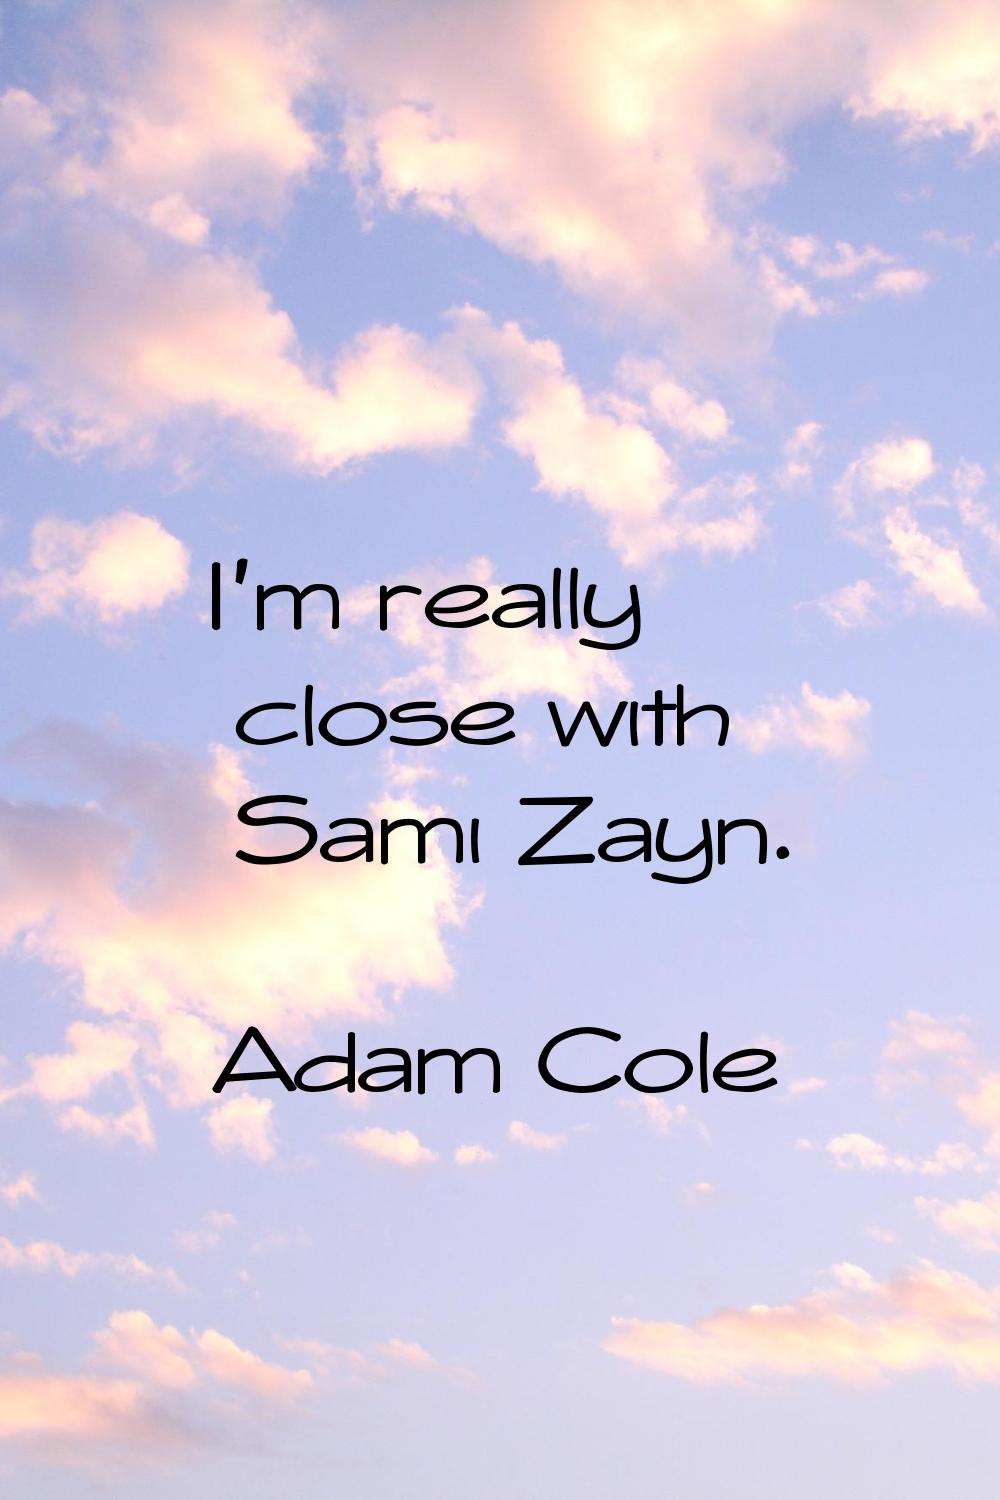 I'm really close with Sami Zayn.